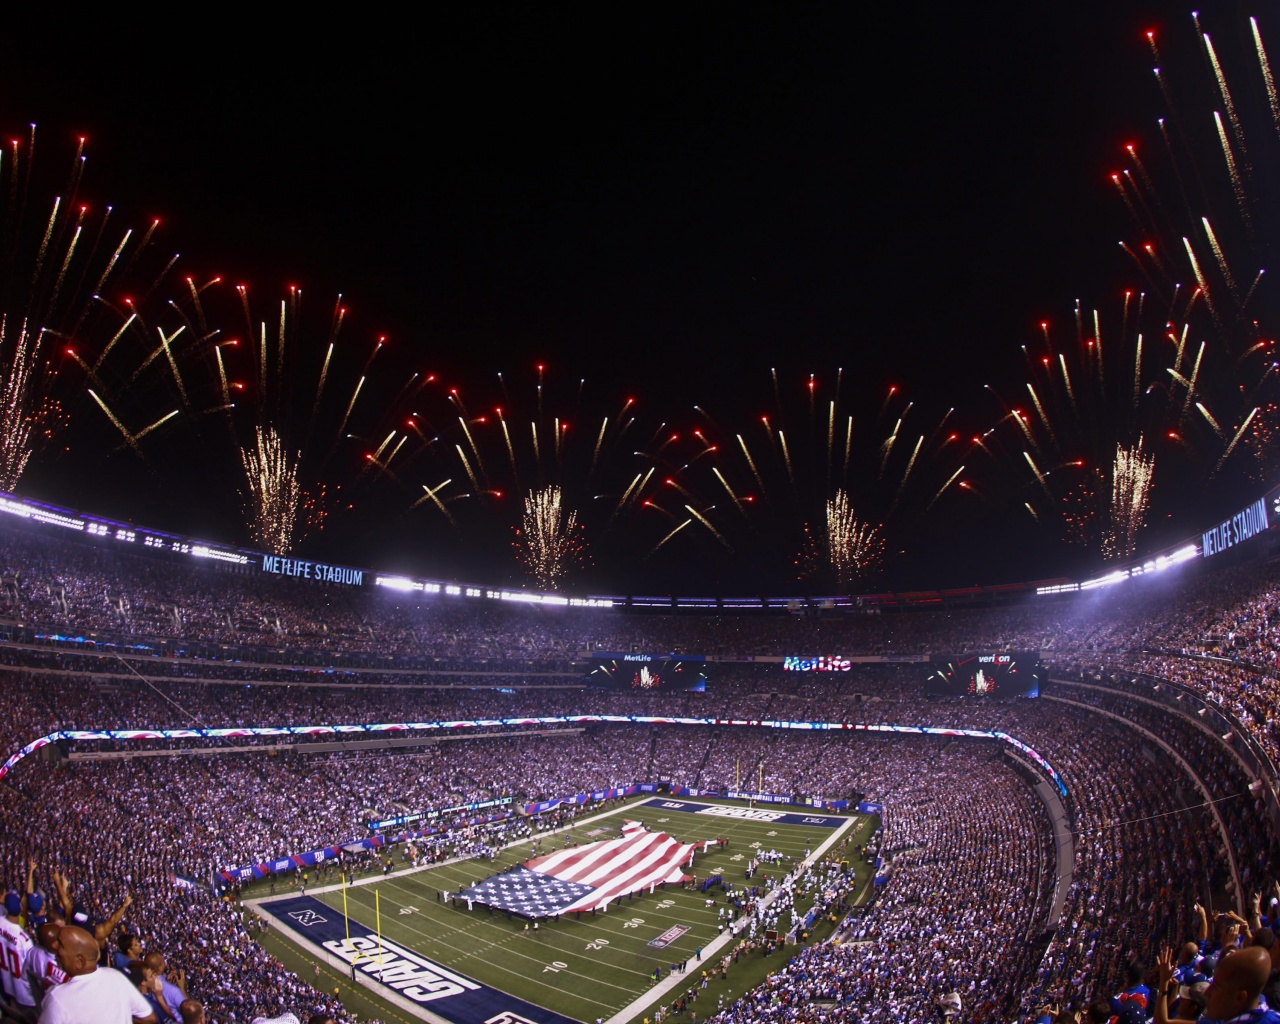 NFL MetLife Stadium And Fireworks